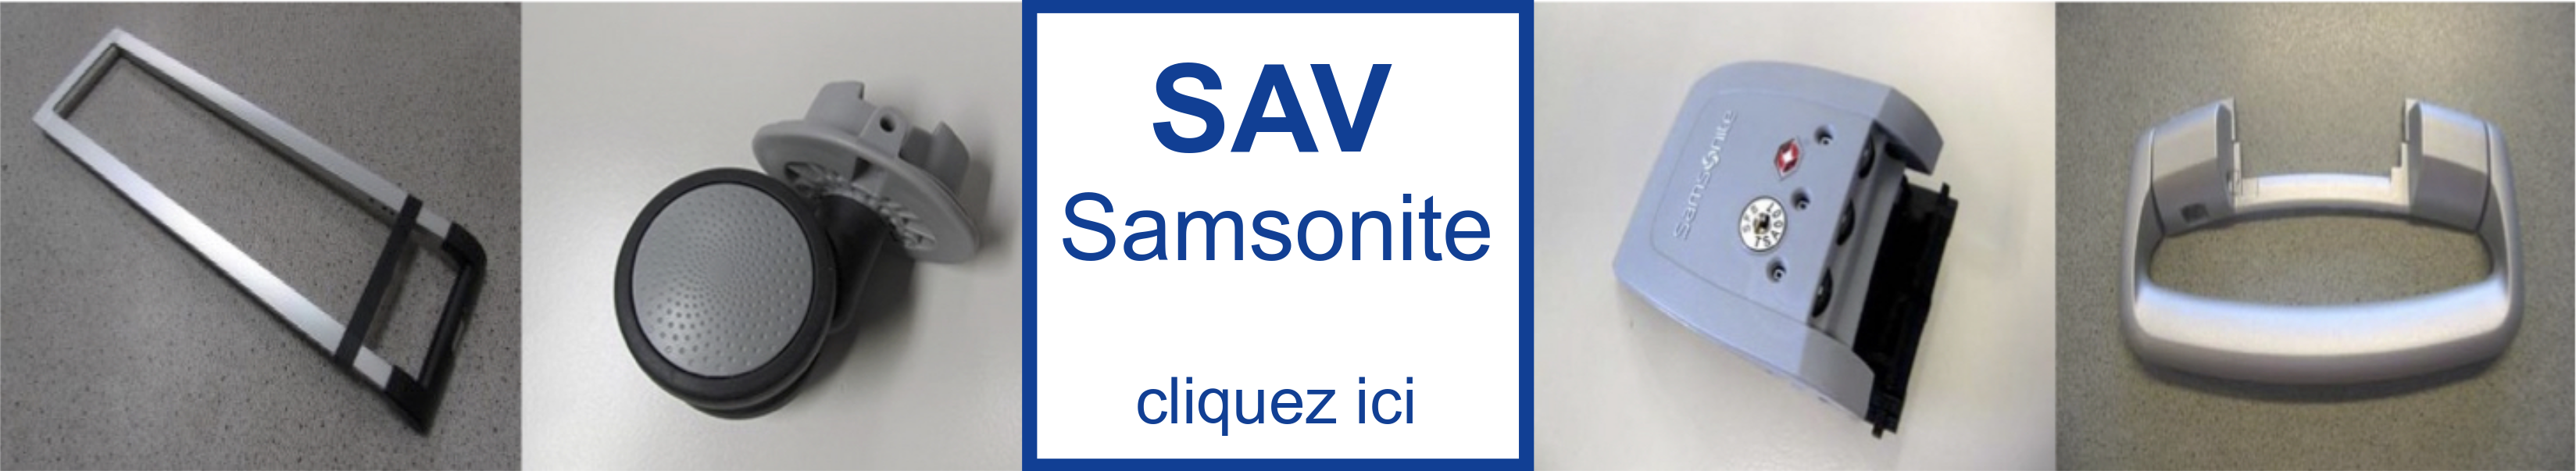 Sav-valise.fr - Epicéa Centre de Réparation Agréé Samsonite